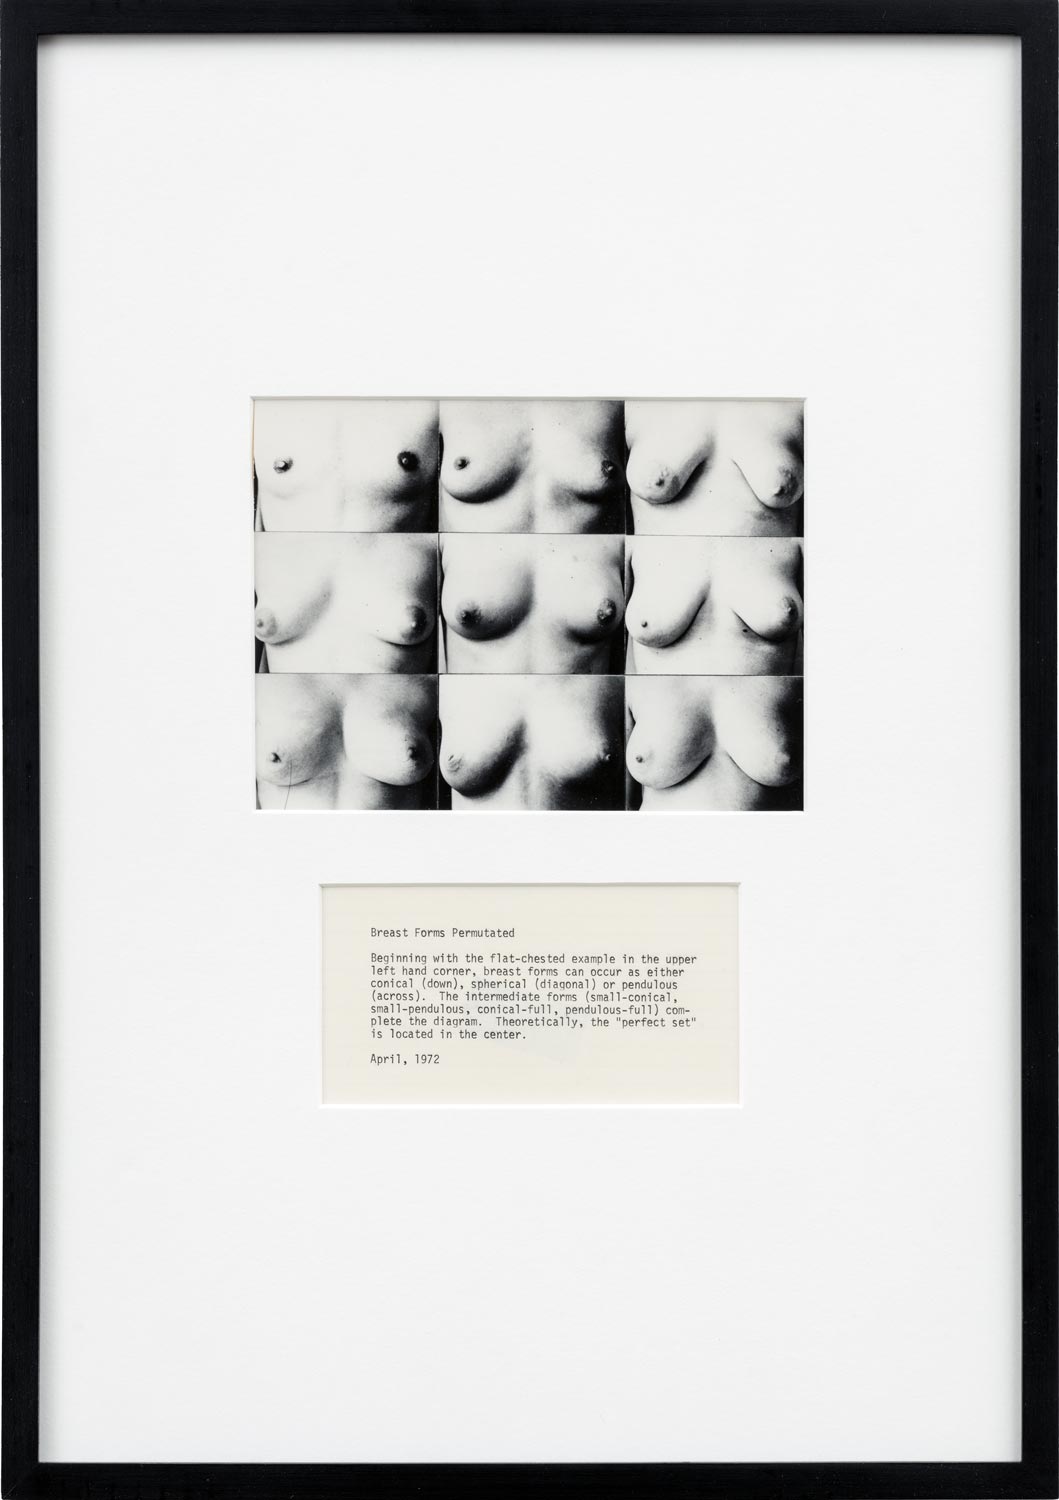 Martha Wilson - Breast Forms Permutated, 1972